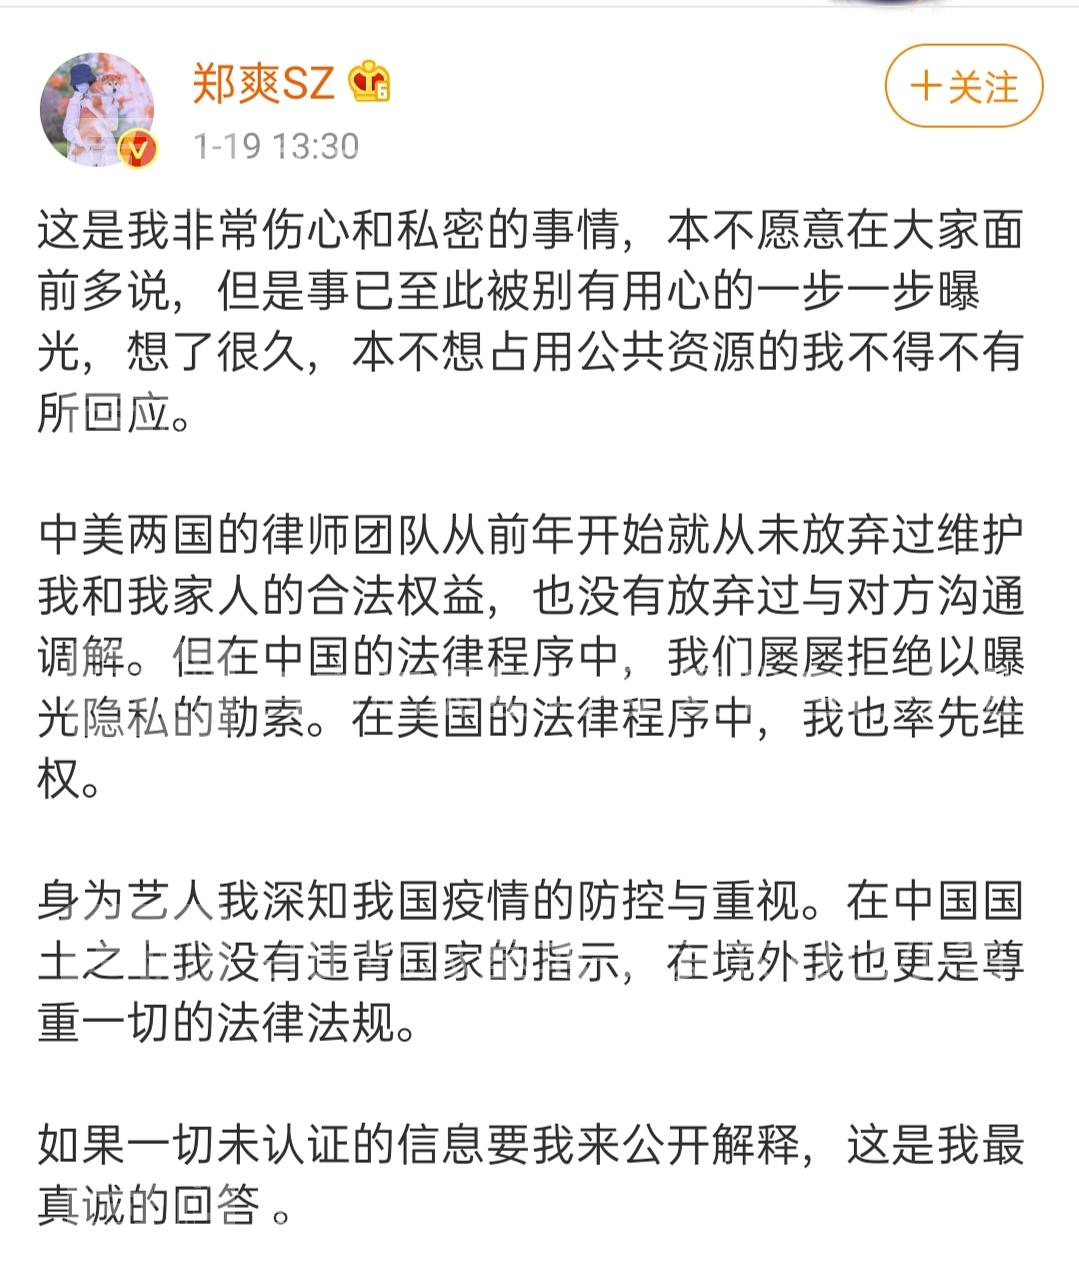 起底郑爽商业版图:关联公司10家,郑爽被曝已录好退圈声明